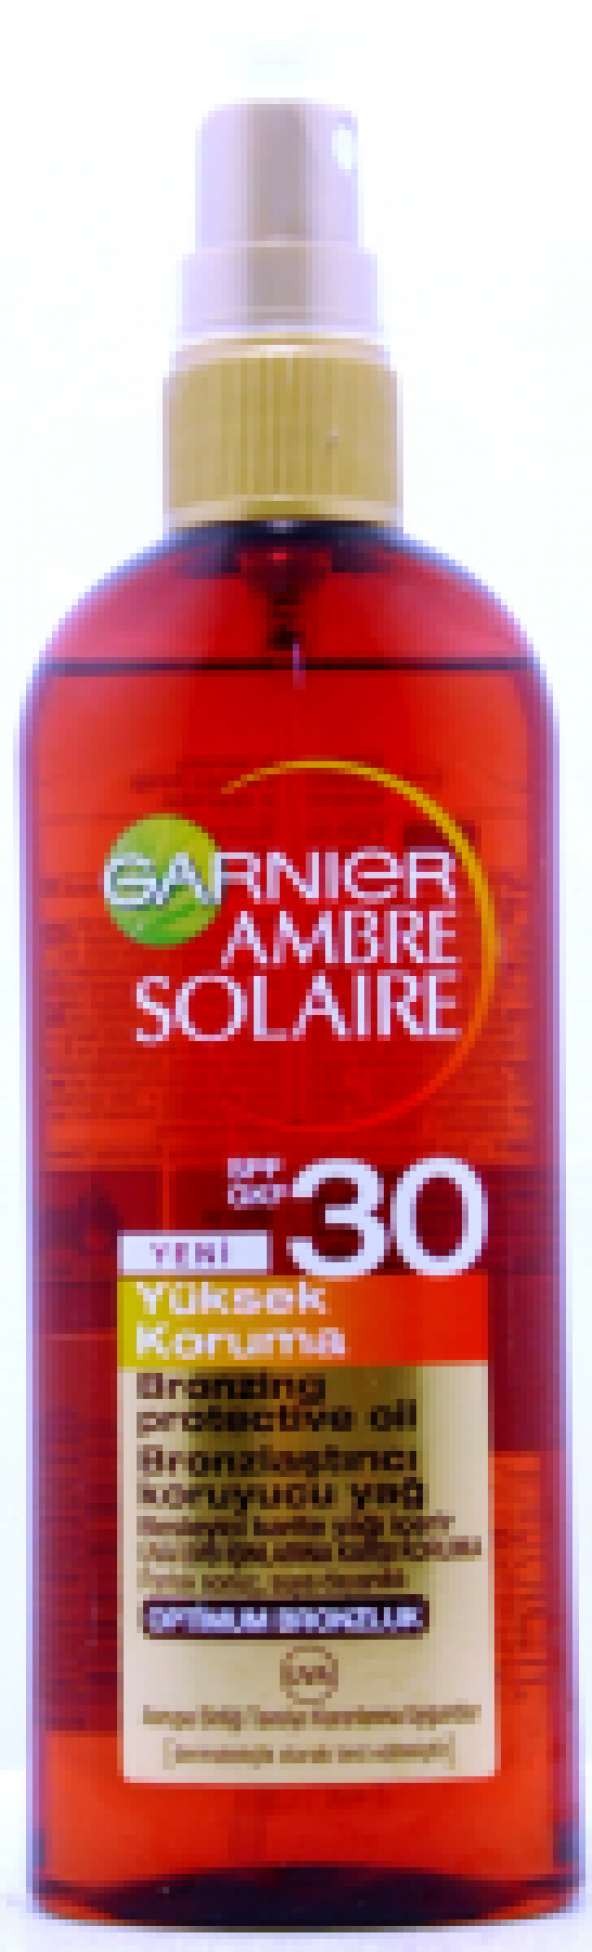 GARNIER AMBRE SOLAIRE F30 Bronzlaştırıcı Yağ Sprey Yüksek Koruma 150ml